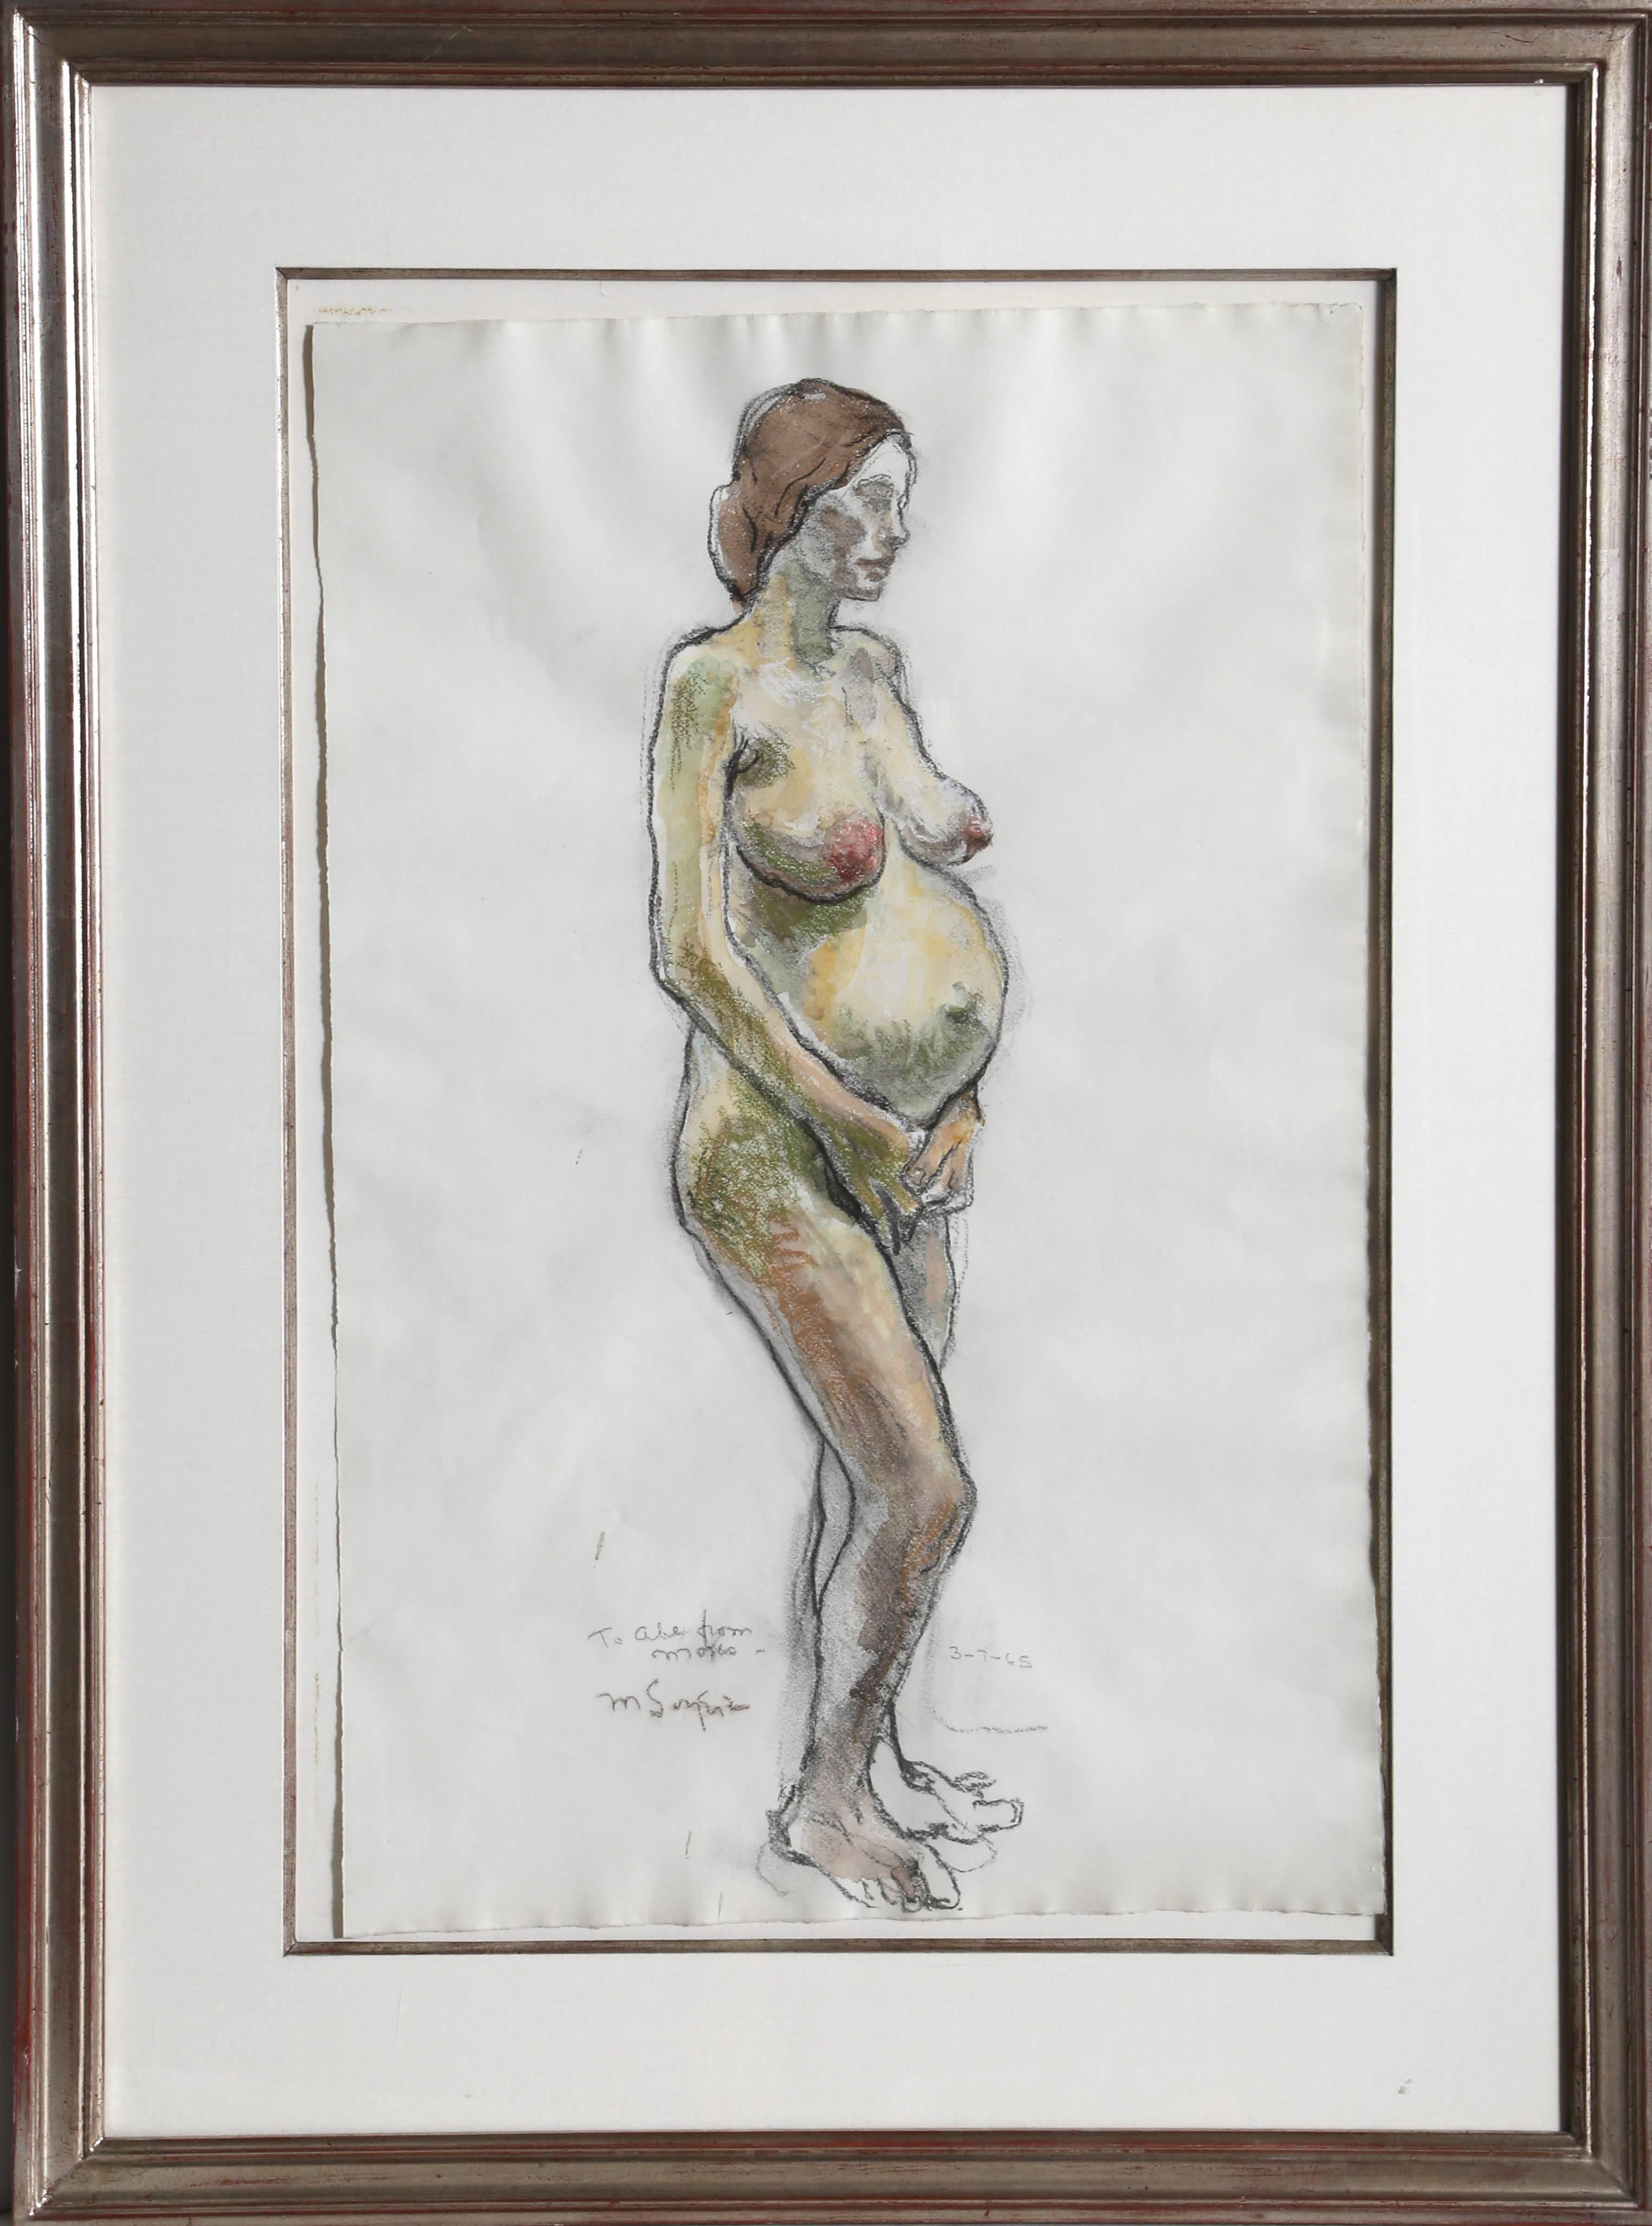 Künstler: Moses Soyer, Amerikaner (1899 - 1974)
Titel: Stehender schwangerer Akt
Jahr: 1965
Medium: Pastell auf Papier, signiert l.l.
Größe: 24 x 15,5 in. (60,96 x 39,37 cm)
Rahmengröße: 33 x 24,5 Zoll